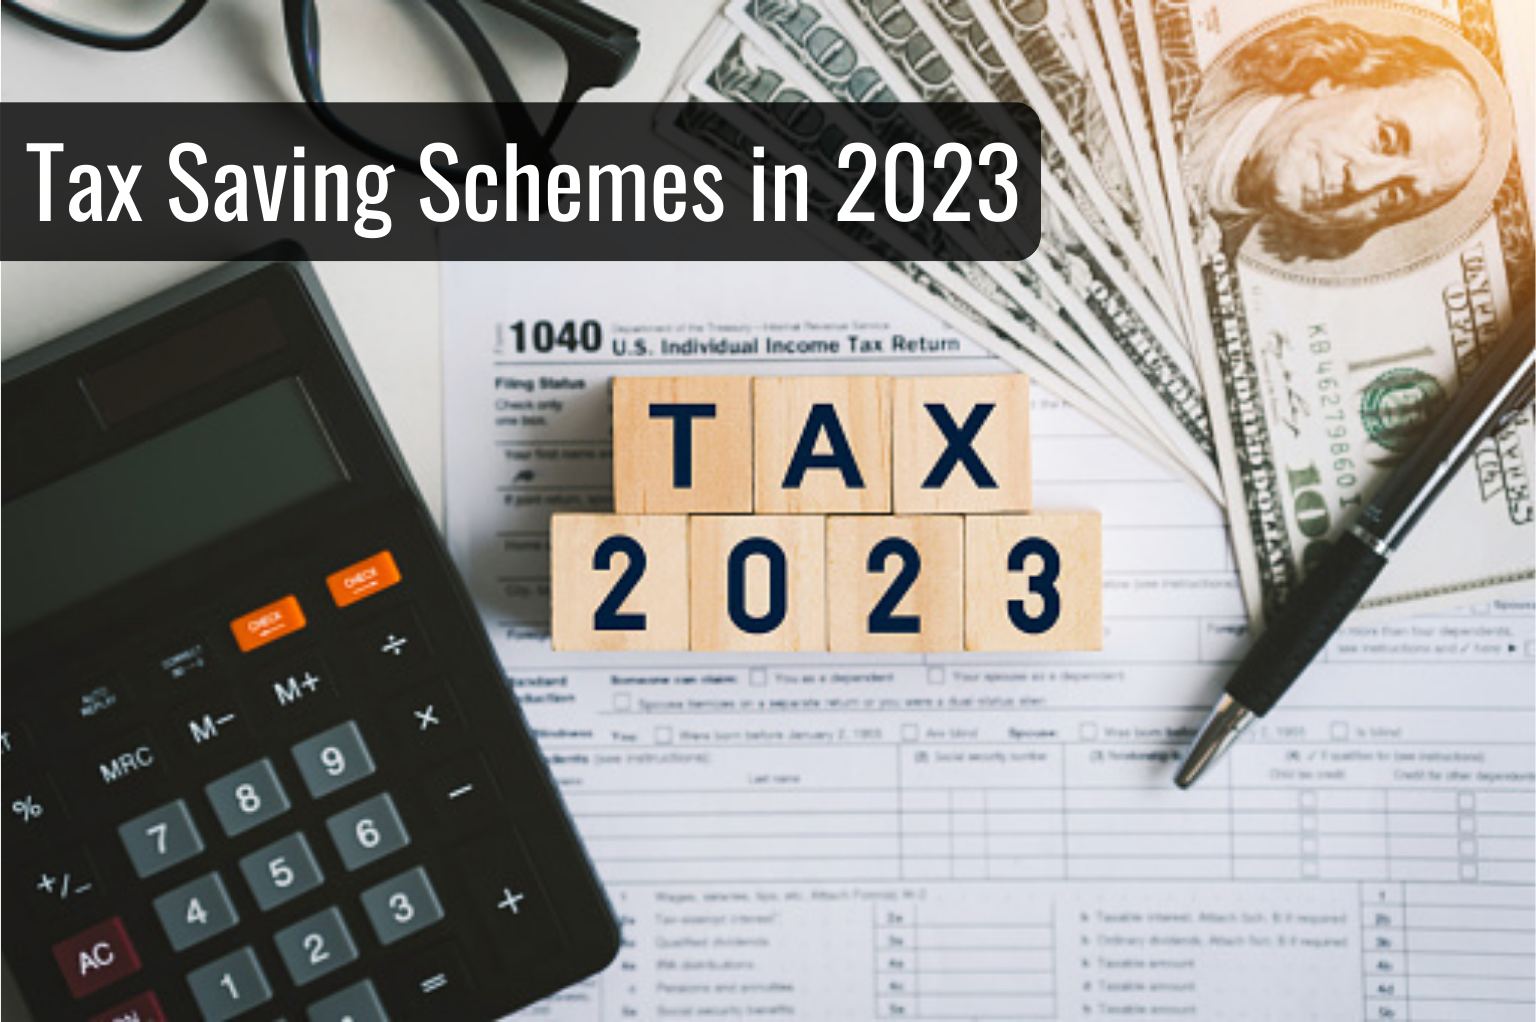 Tax Saving Schemes in 2023